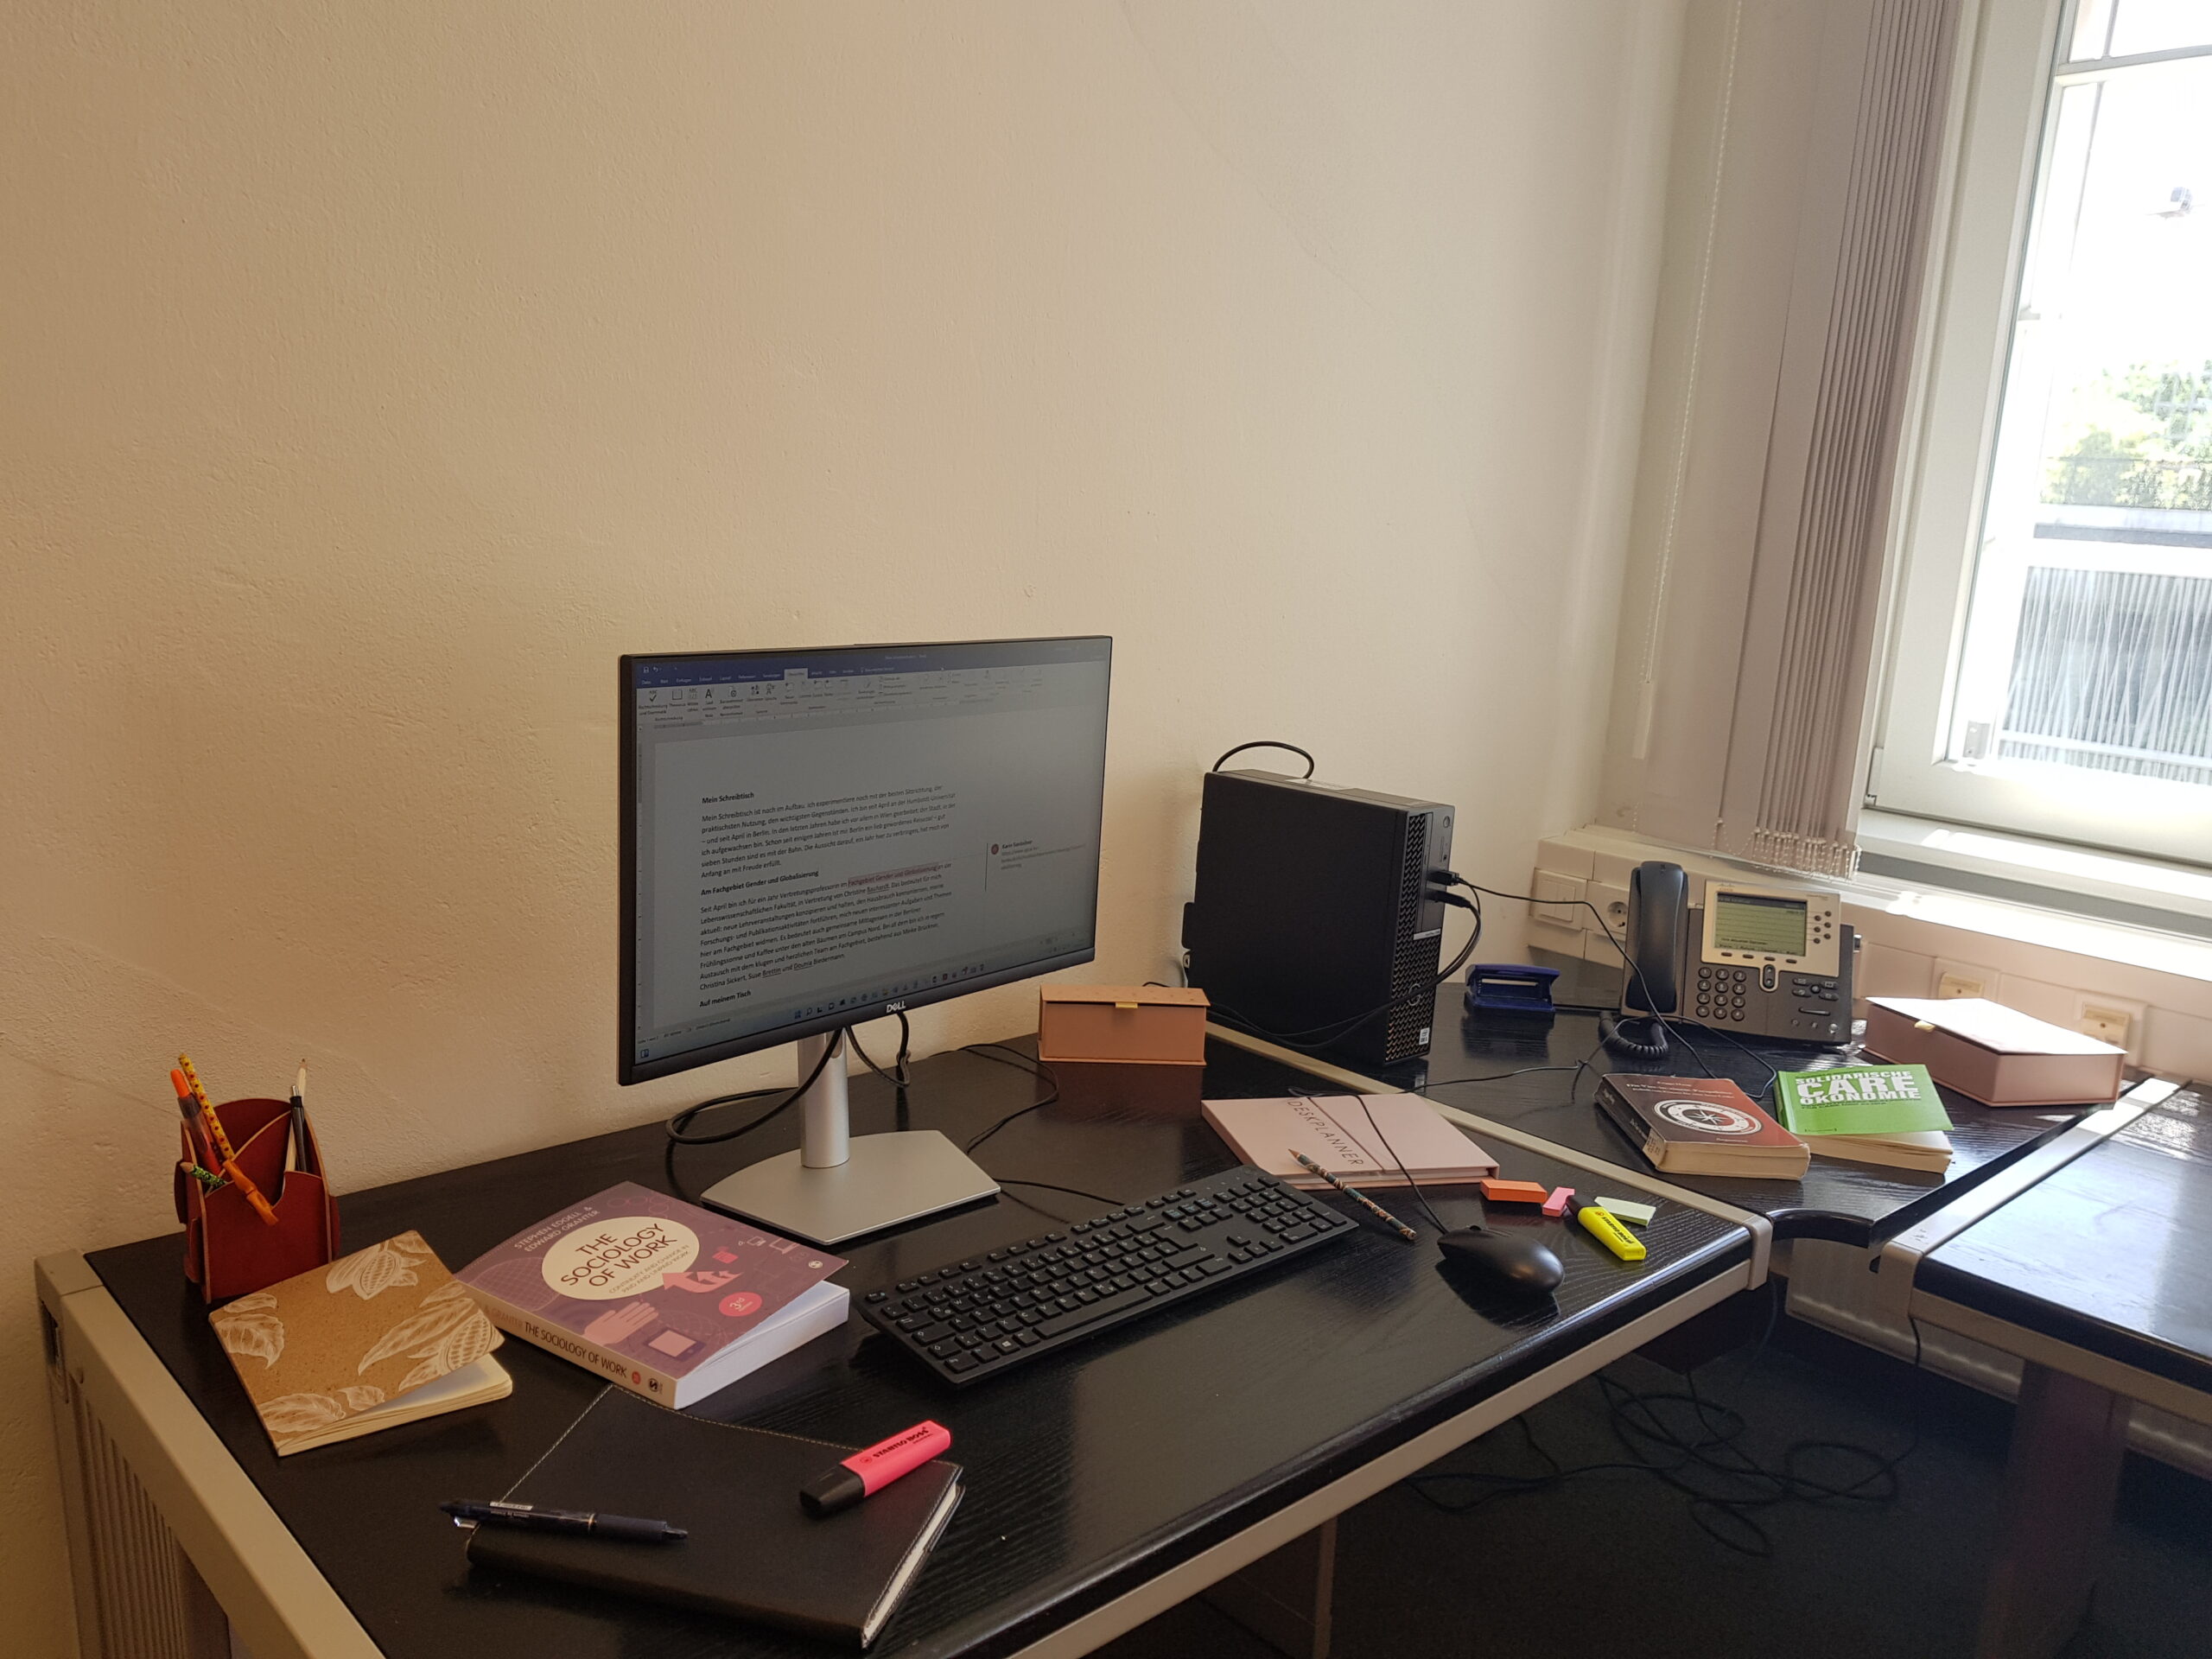 Das Bild zeigt den Schreibtisch der Autorin, auf dem unterschiedliche Utensilien wie Bücher und Unterichtsmaterial liegen und ein Computer steht.